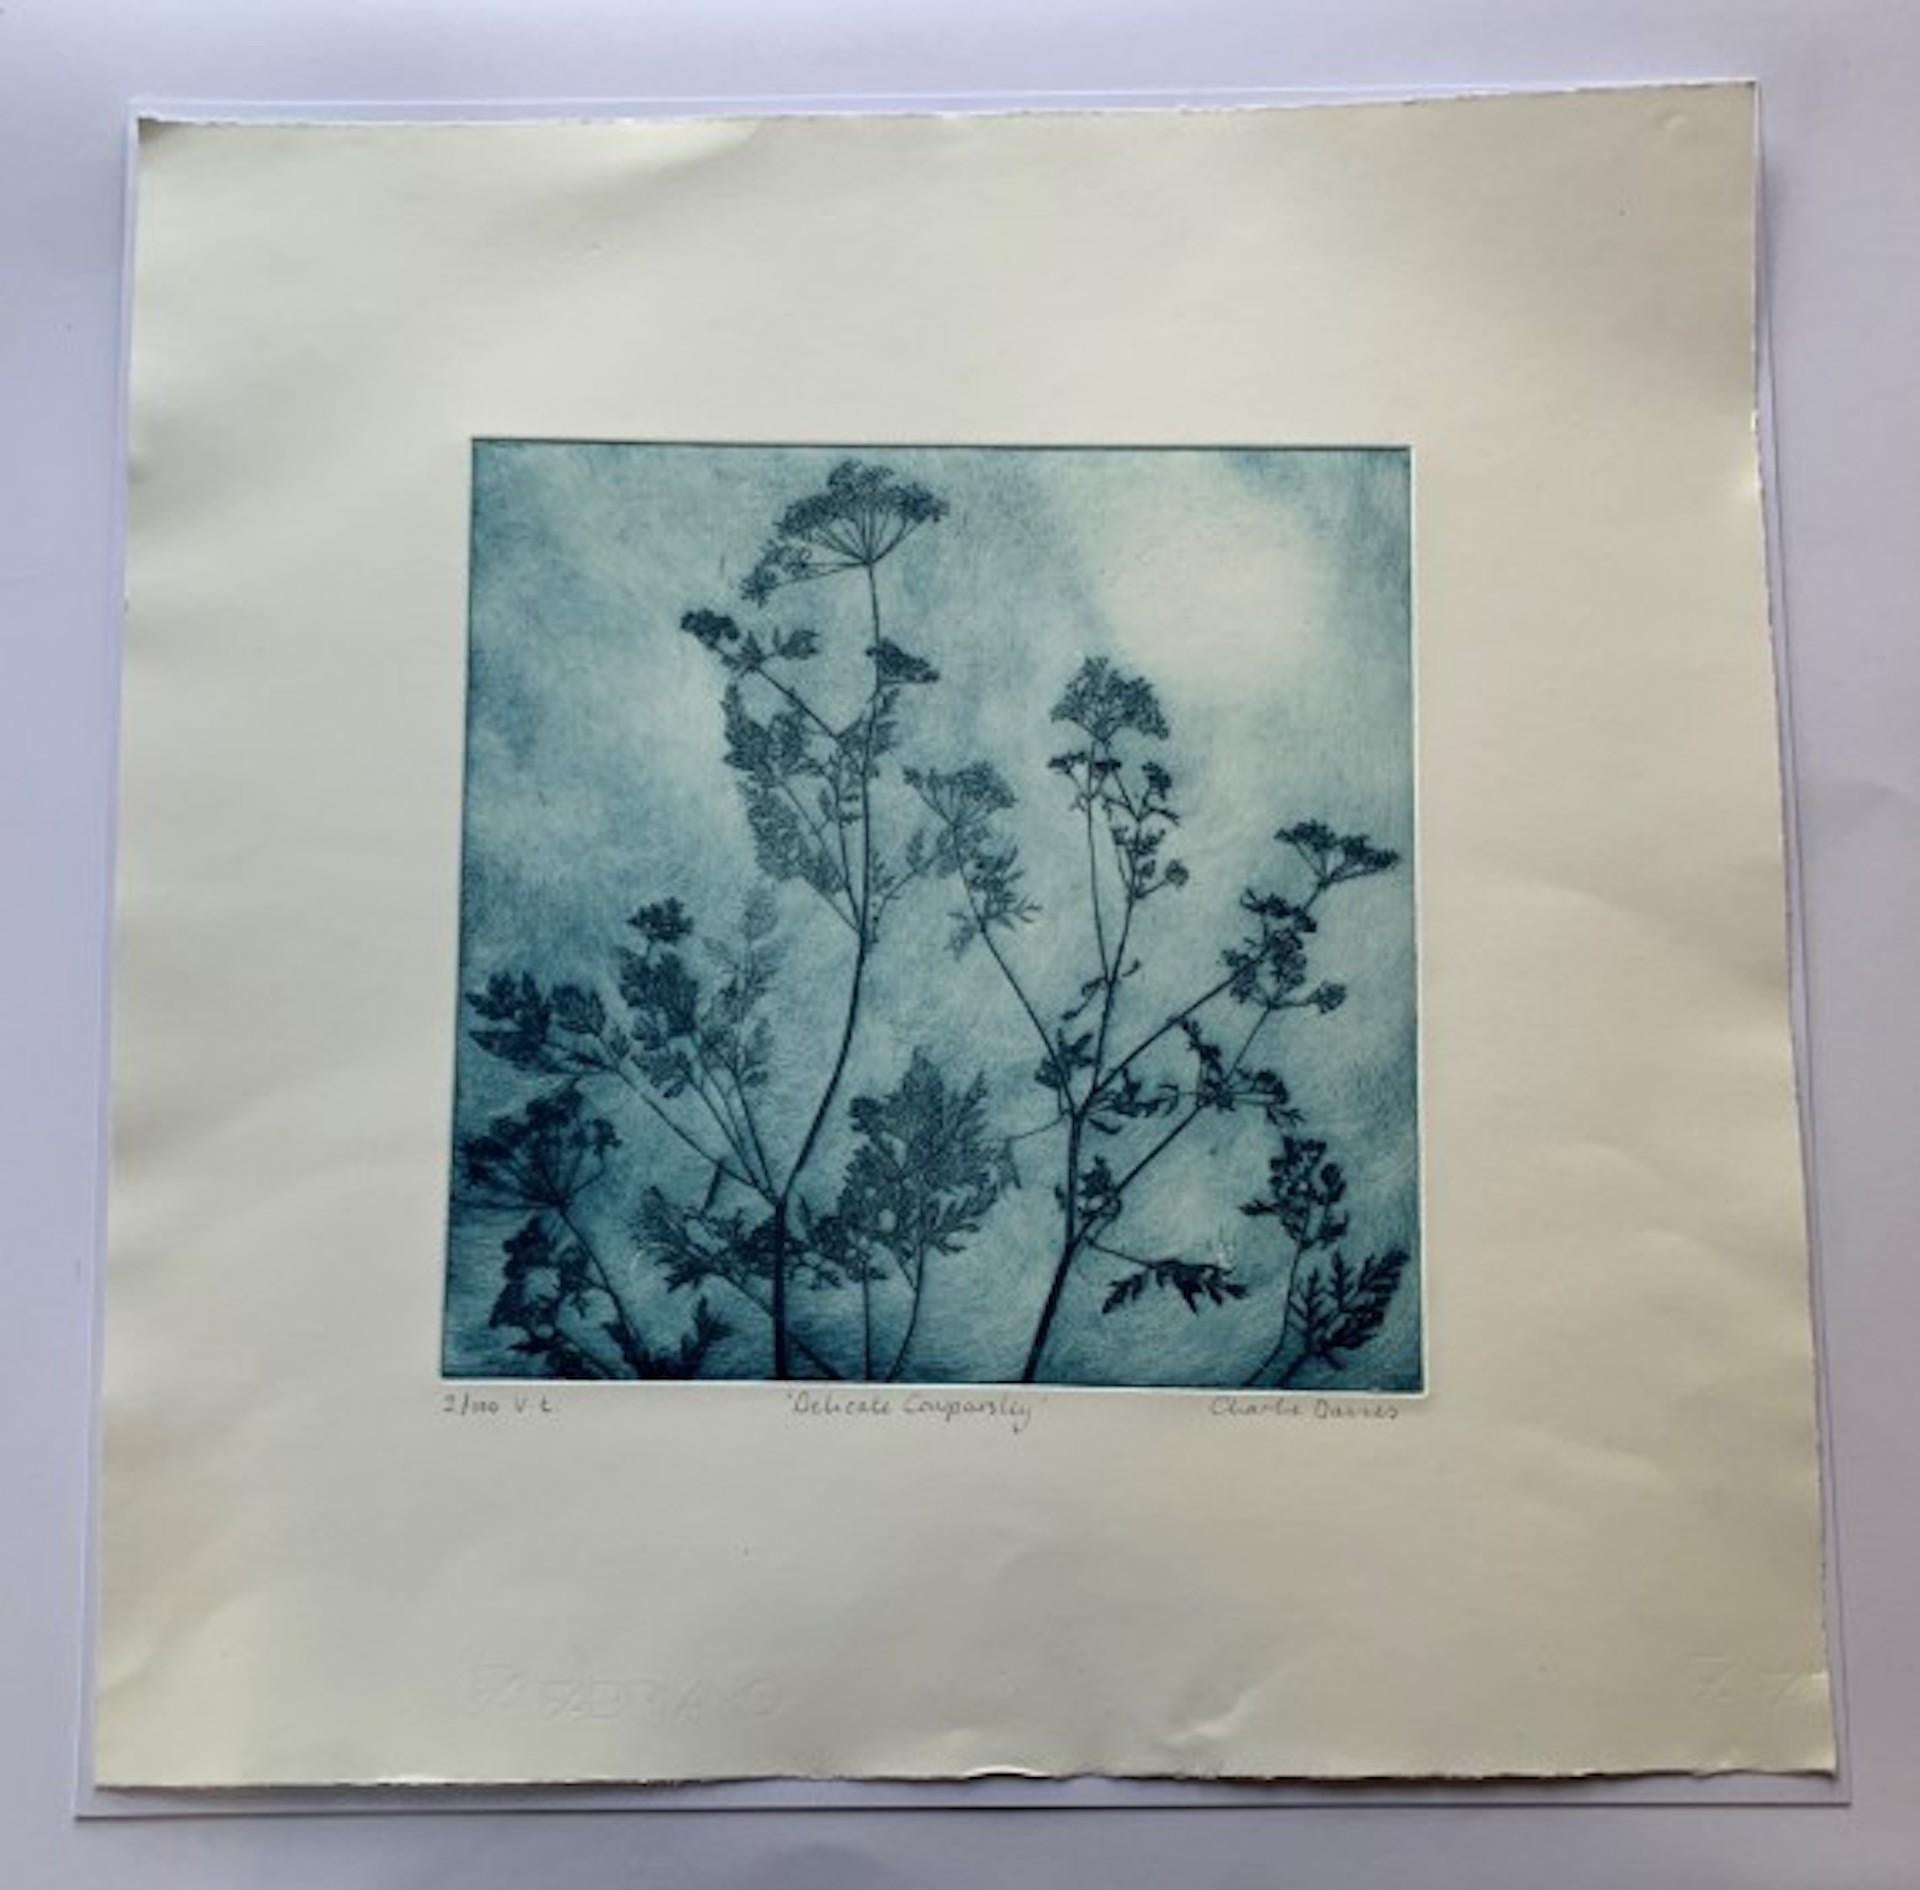 Delicate Cowparsley, limitierte Auflage, Radierungsdruck, blauer Blumendruck, echte Blume, geblümte Kunst – Print von Charlie Davies